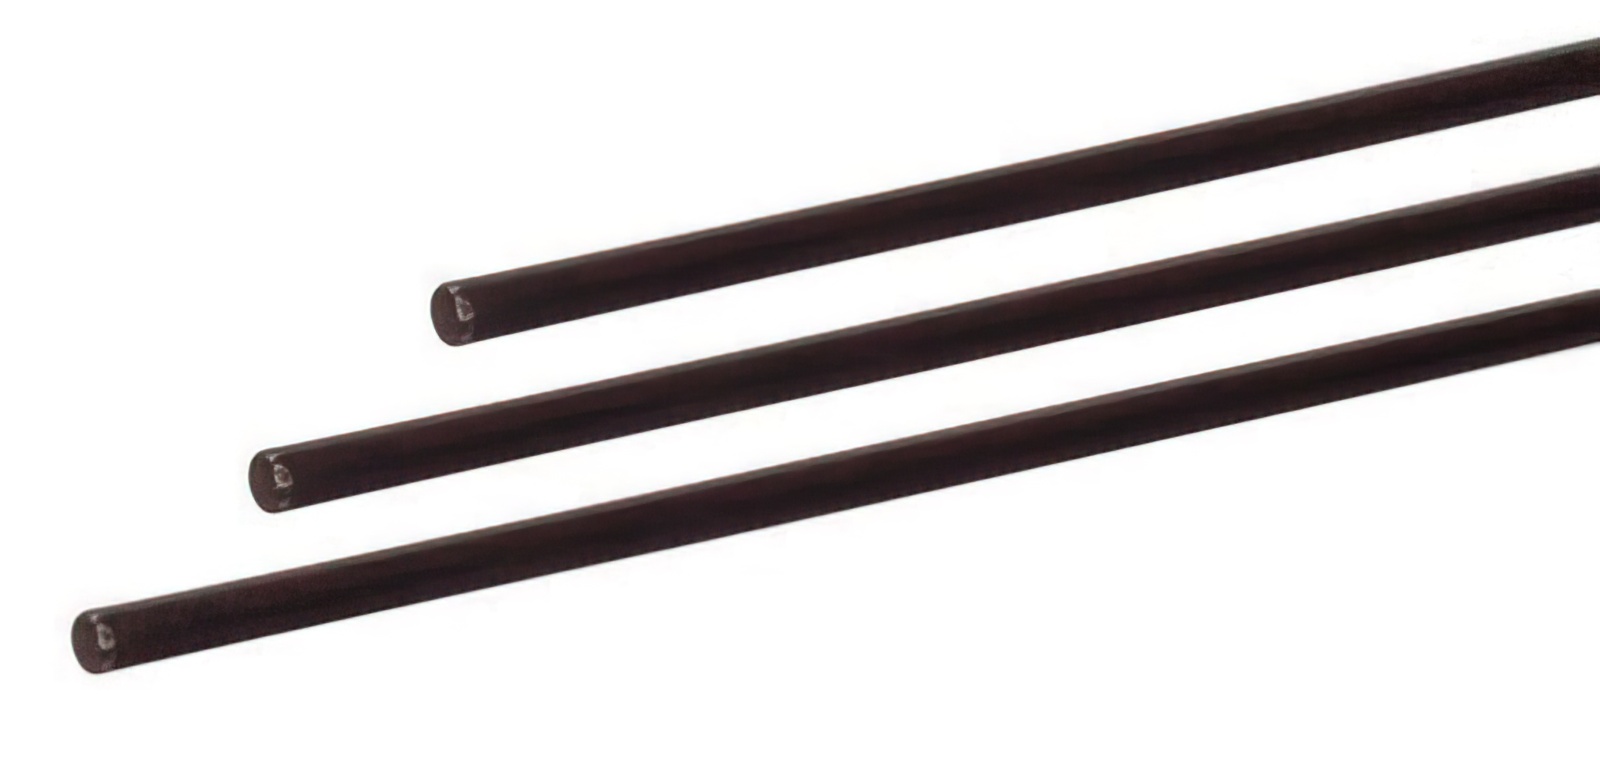 10 Stück - Gfk-Vollstab (Fiberglasstab/Glasfaserstab) 6  mm 175 cm schwarz für Drachen- und Modellbau Basteln Montagen Messebau Industrie Haushalt